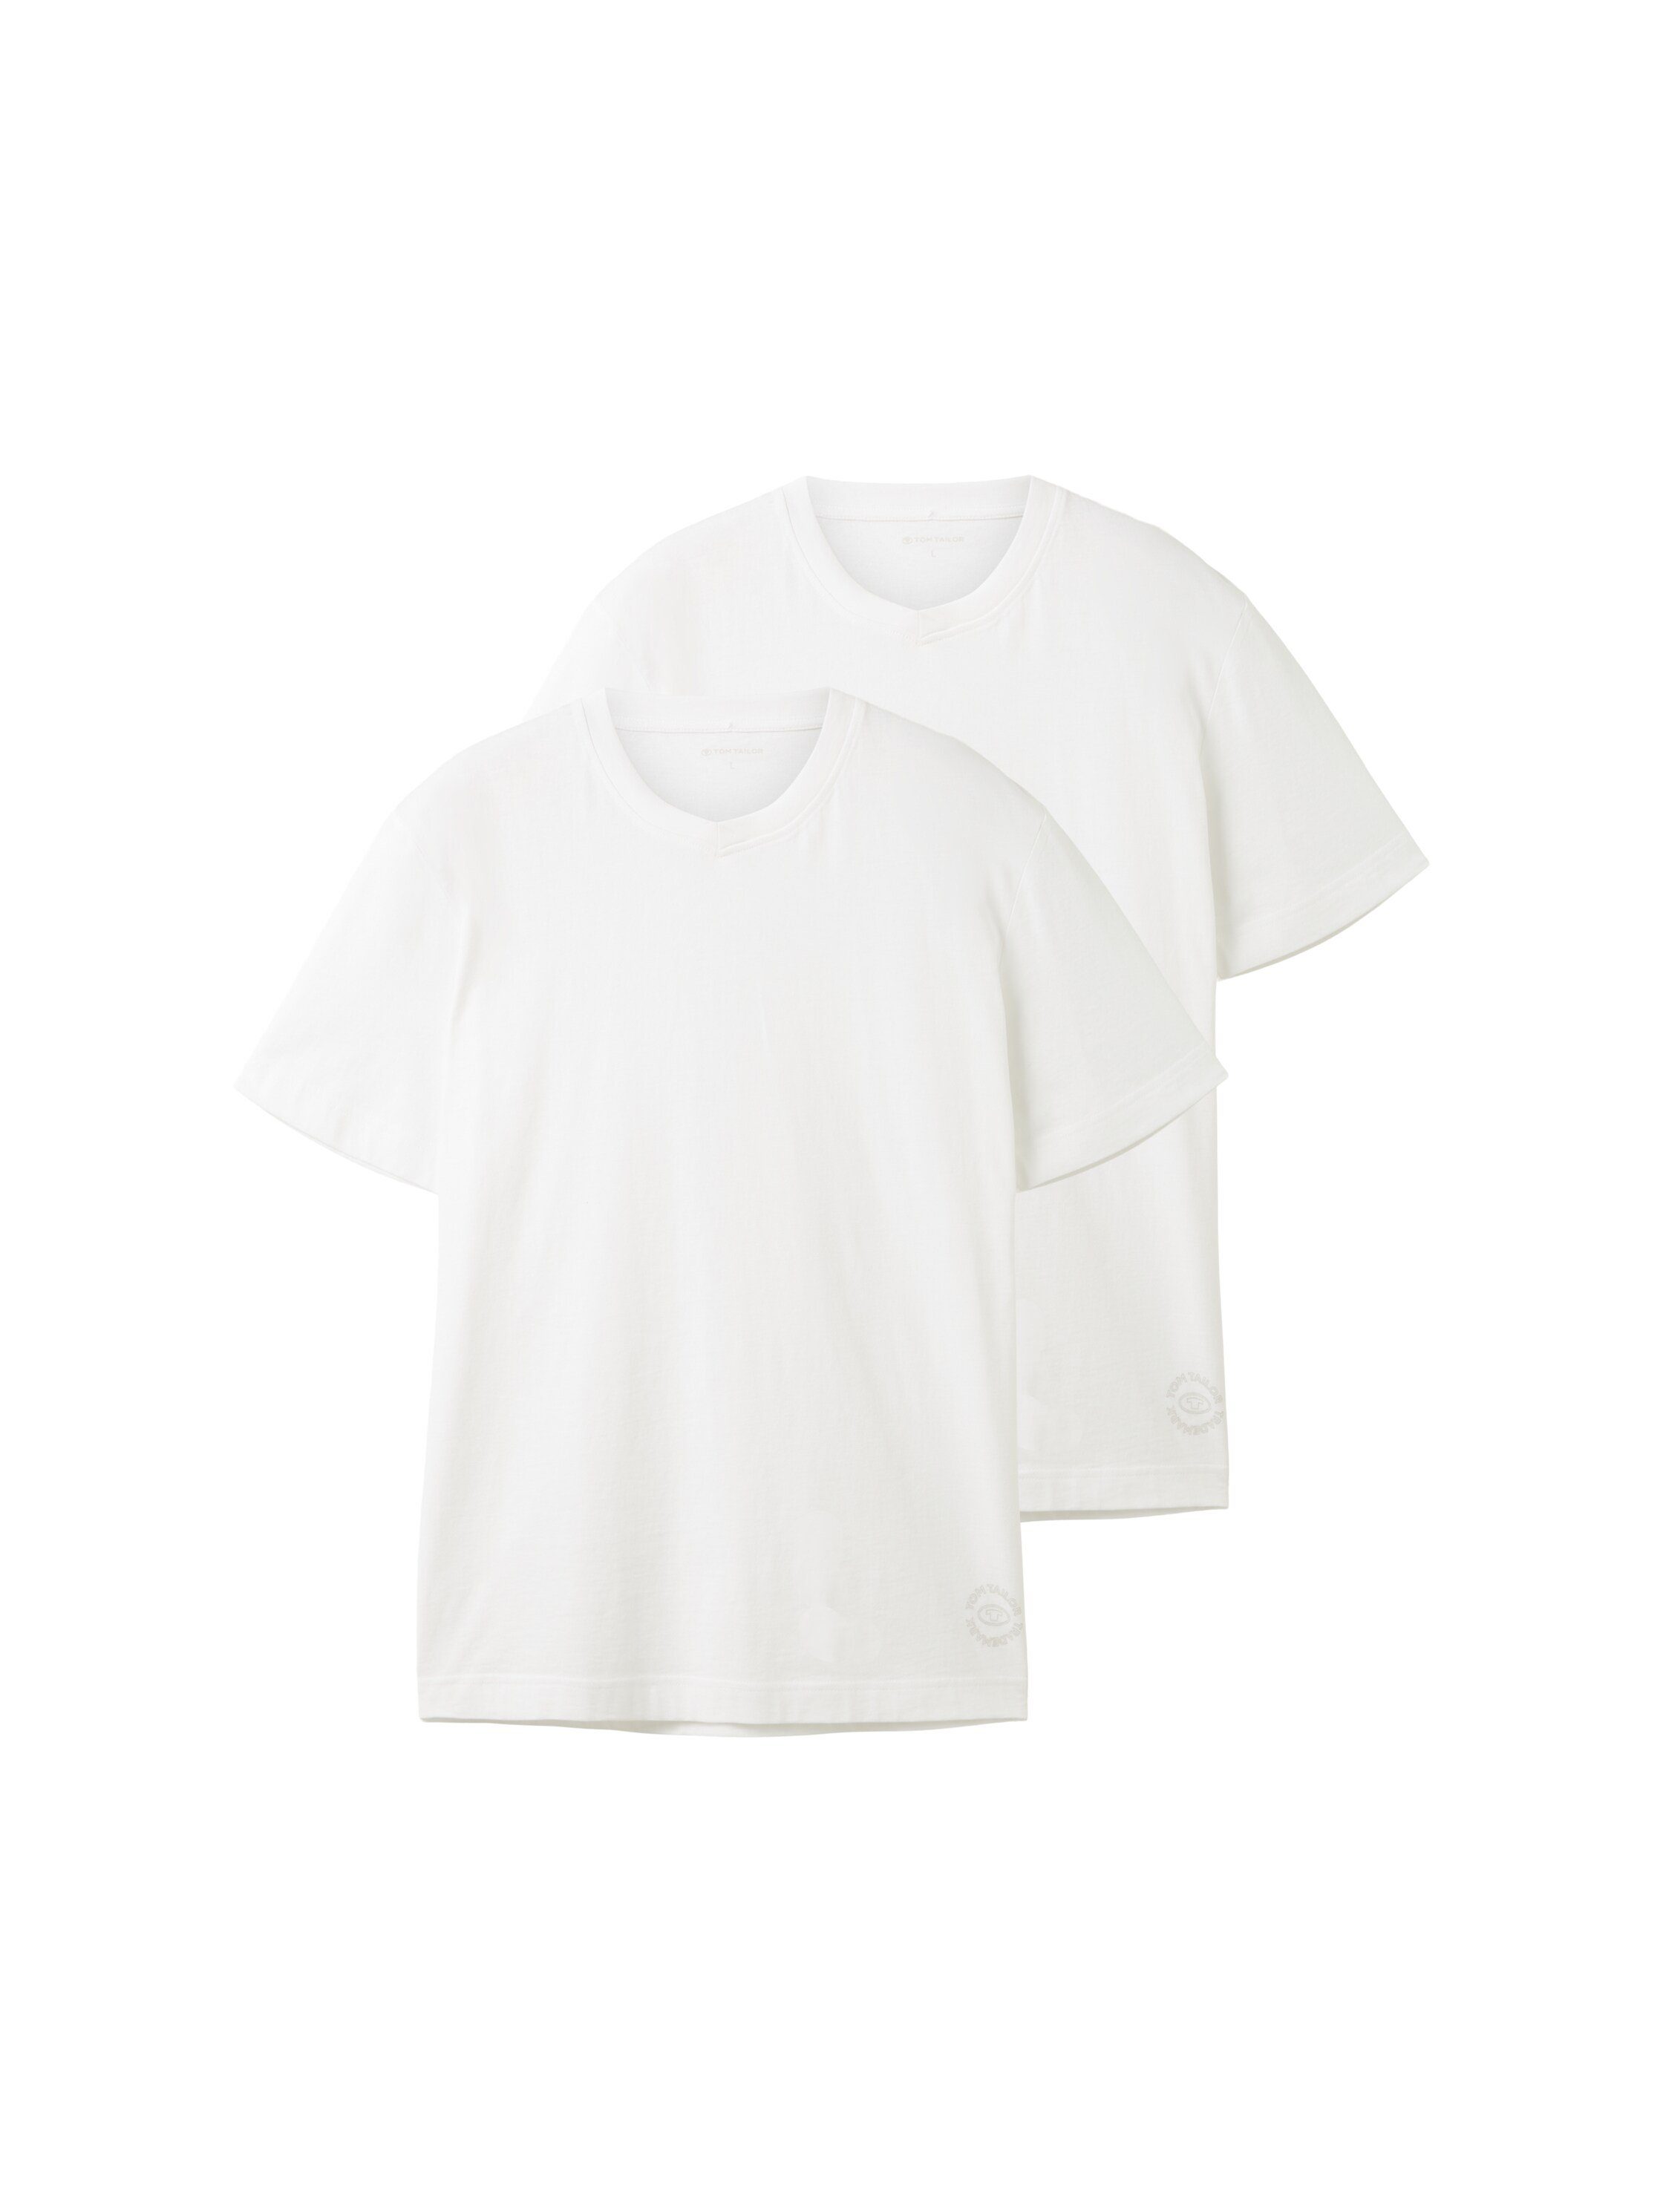 TOM TAILOR T-Shirt mit V-Ausschnitt white